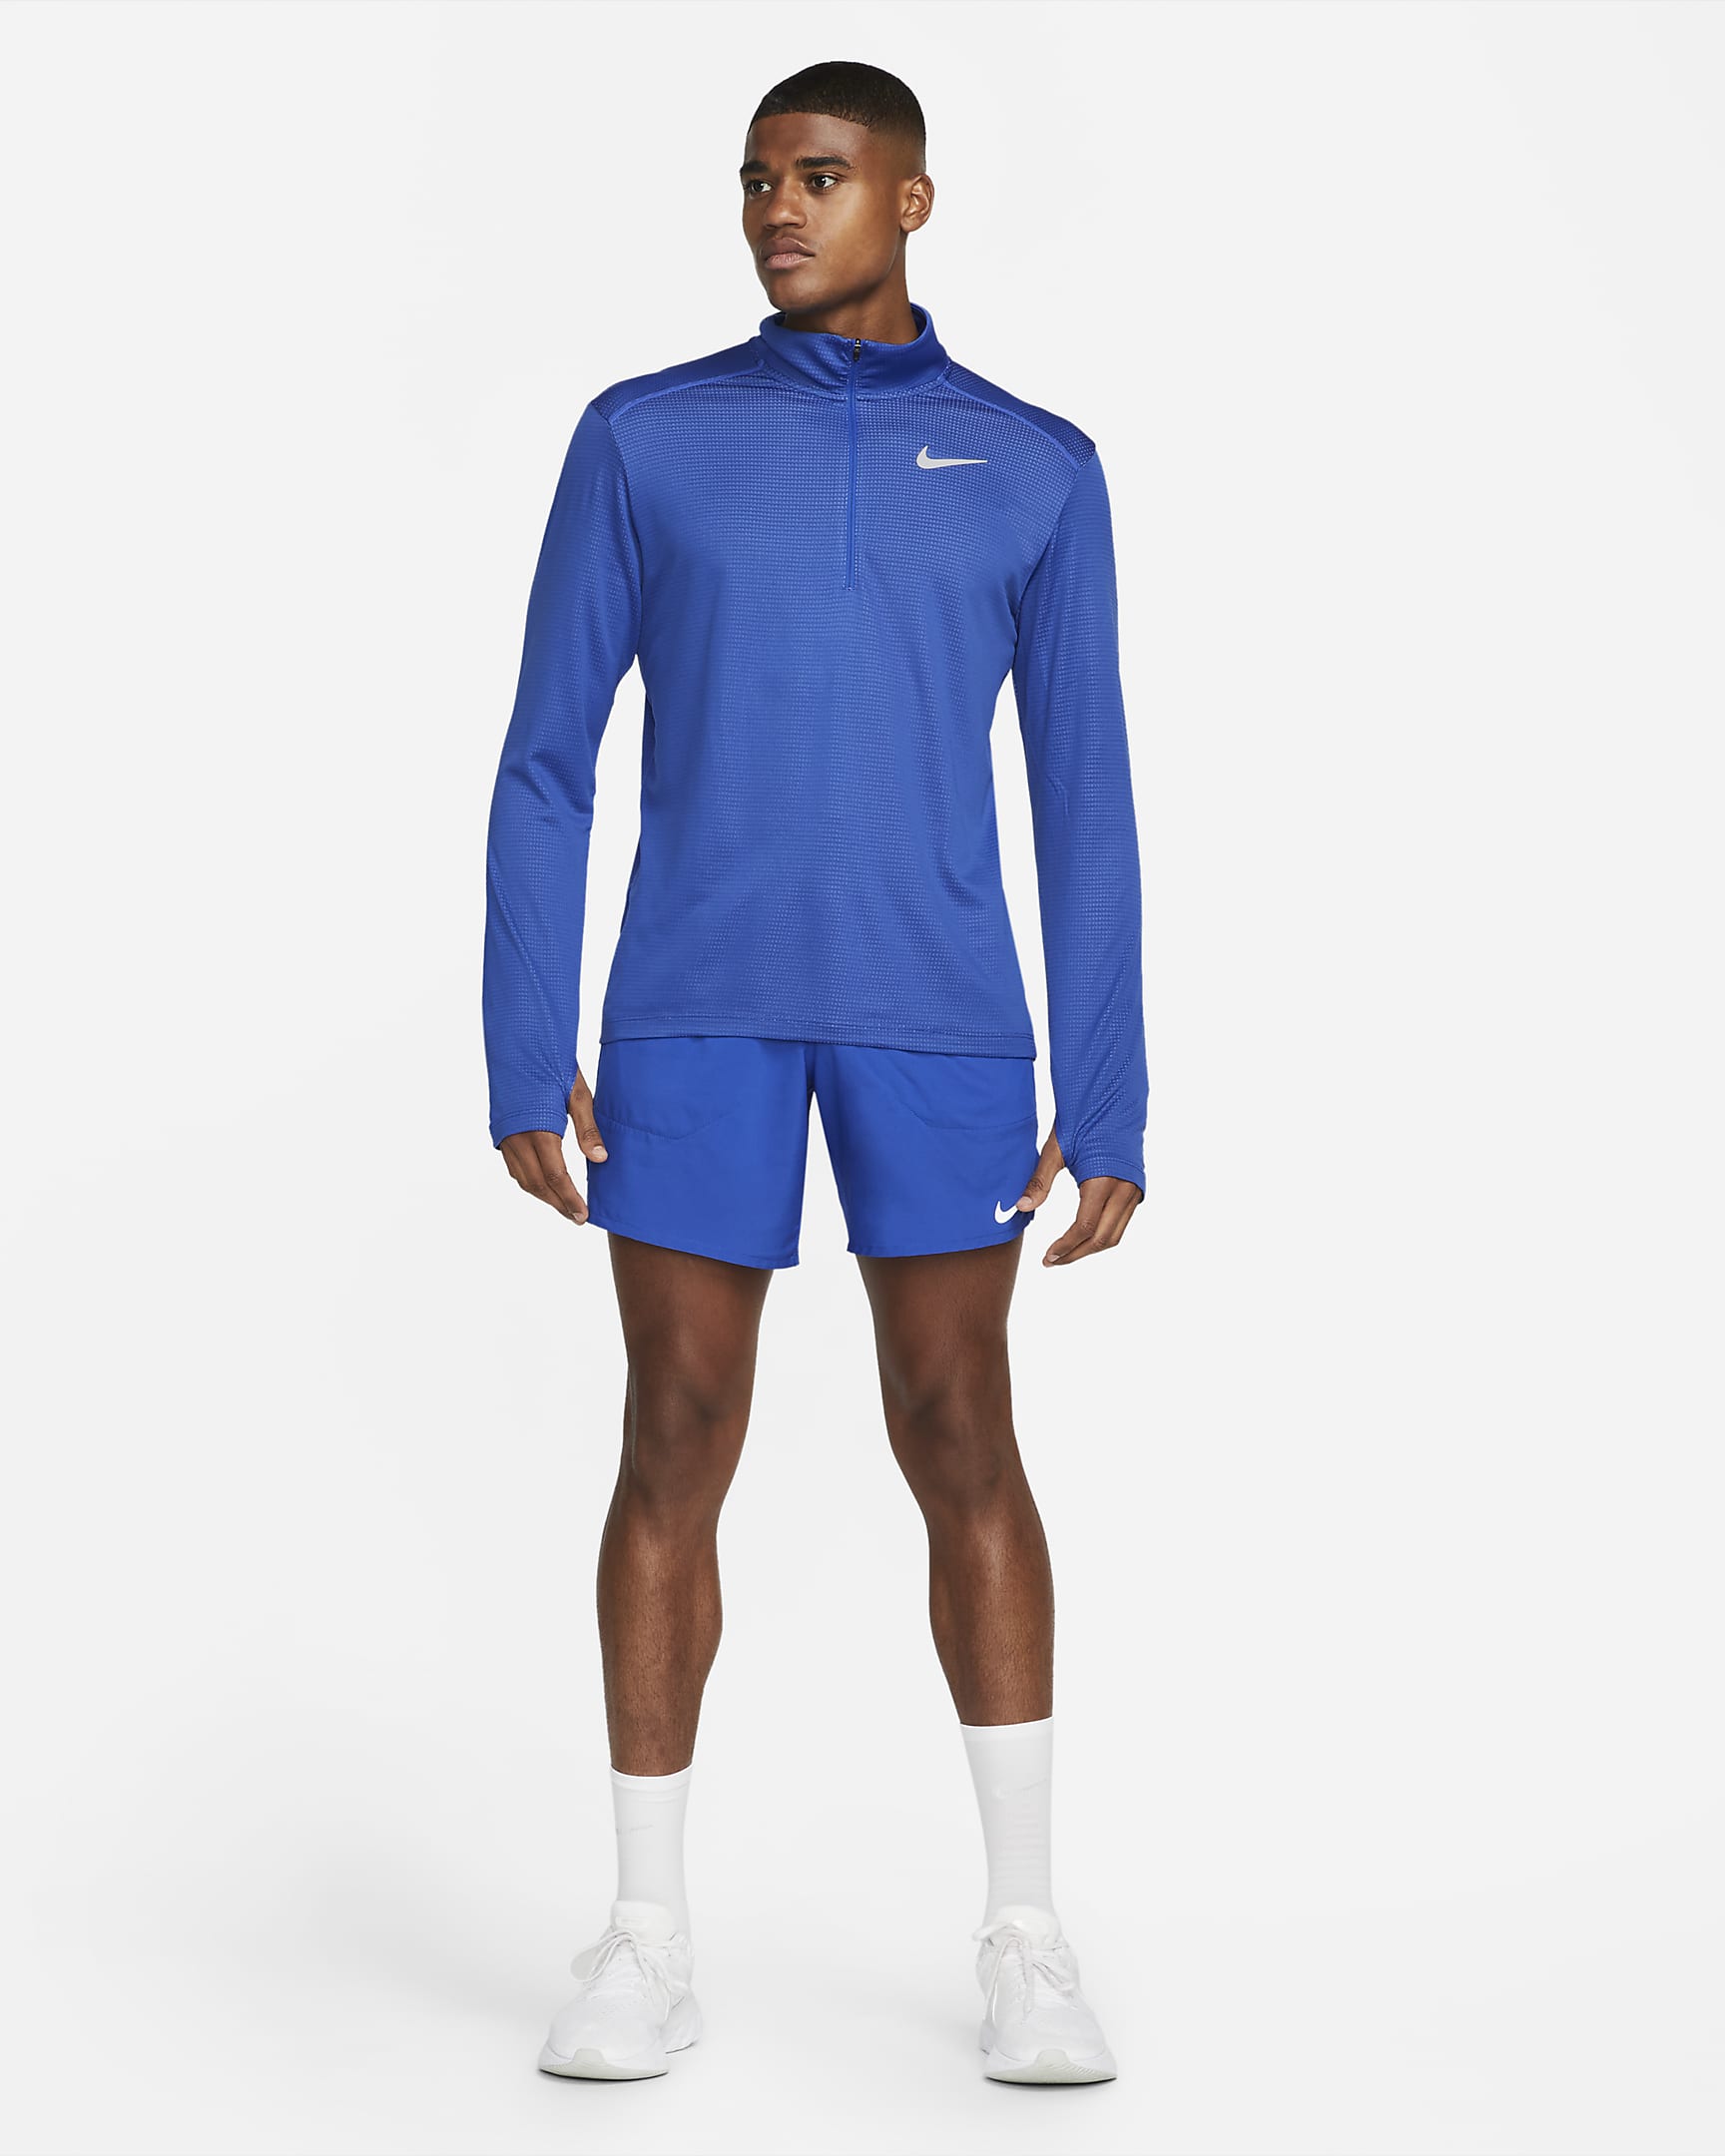 Nike Pacer Men's 1/2-Zip Running Top. Nike LU